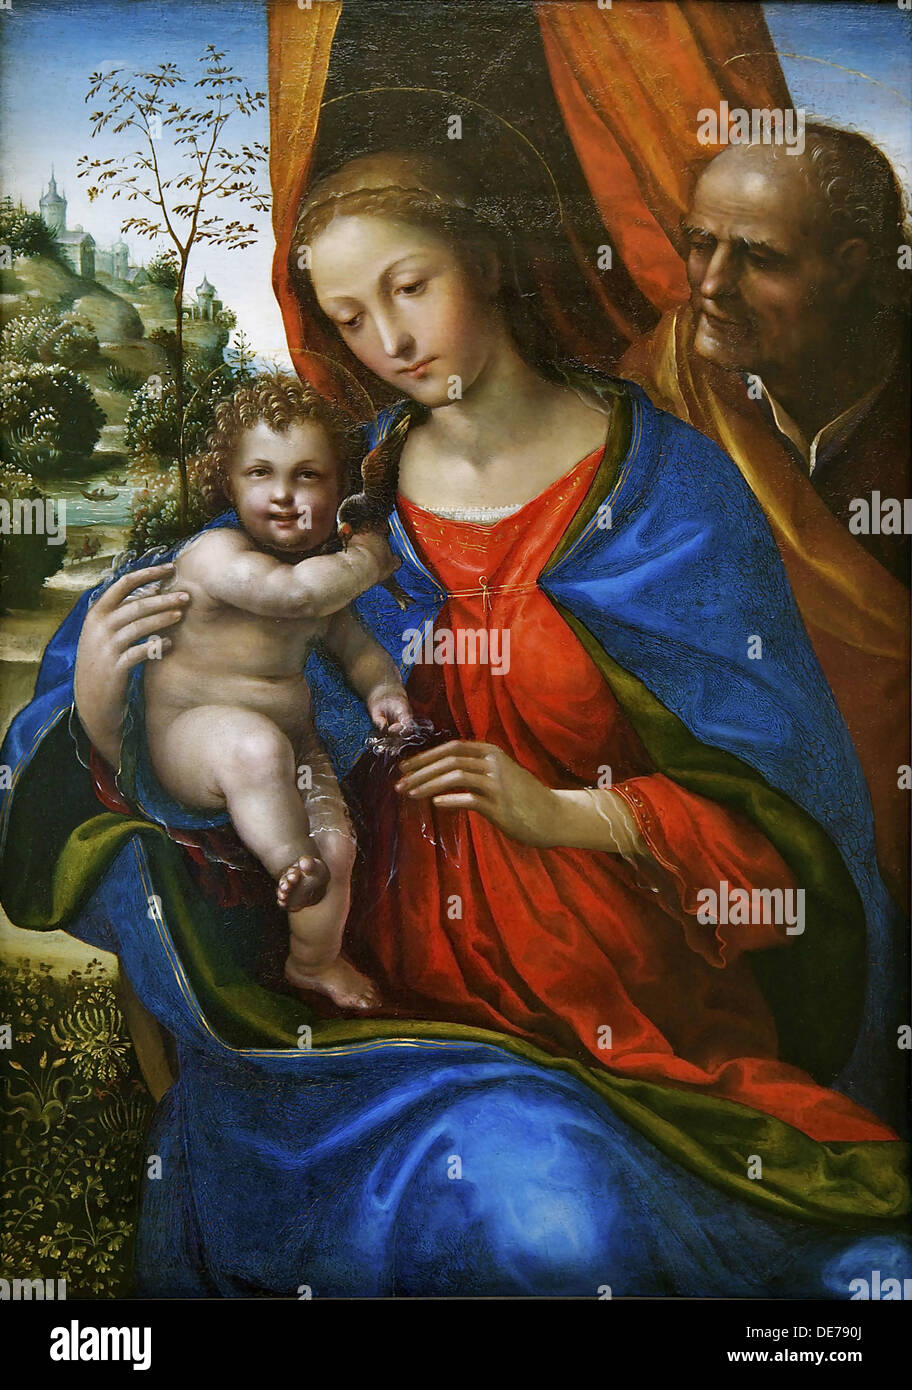 The Holy Family. Artist: Sodoma (1477-1549) Stock Photo